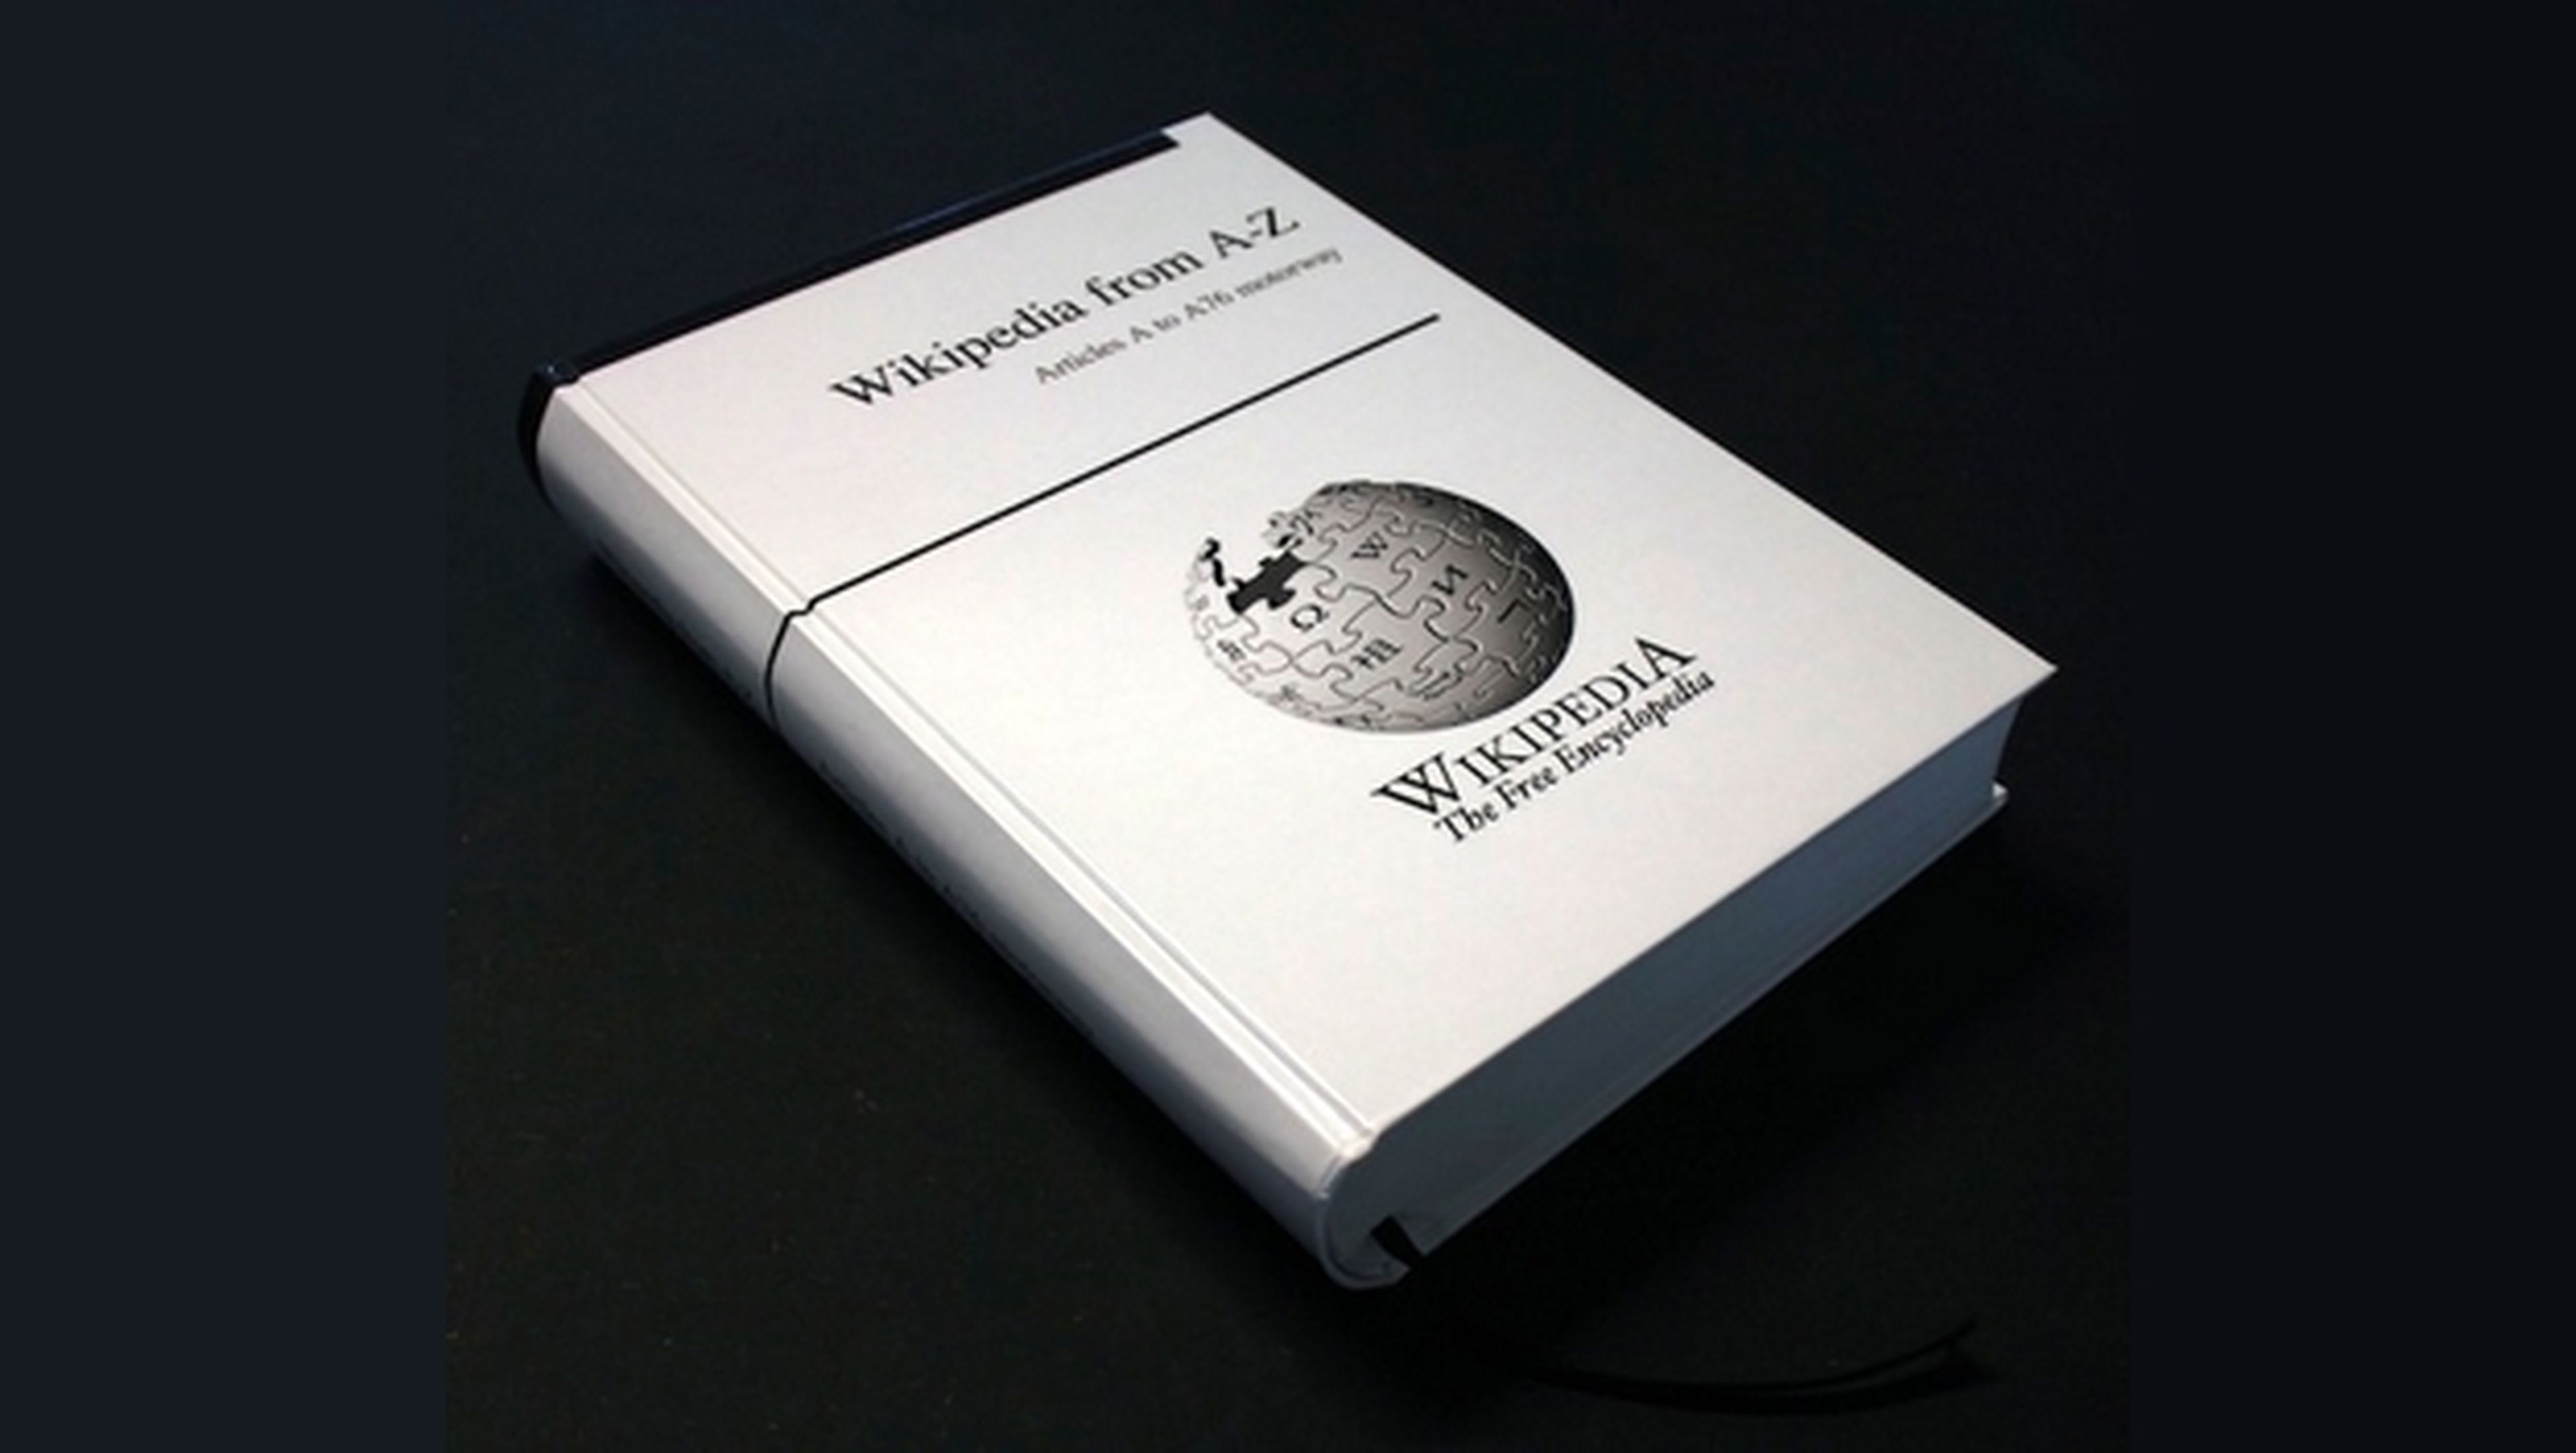 Pedia Press pretende imprimir la Wikipedia en 1000 libros de 1200 páginas cada uno.